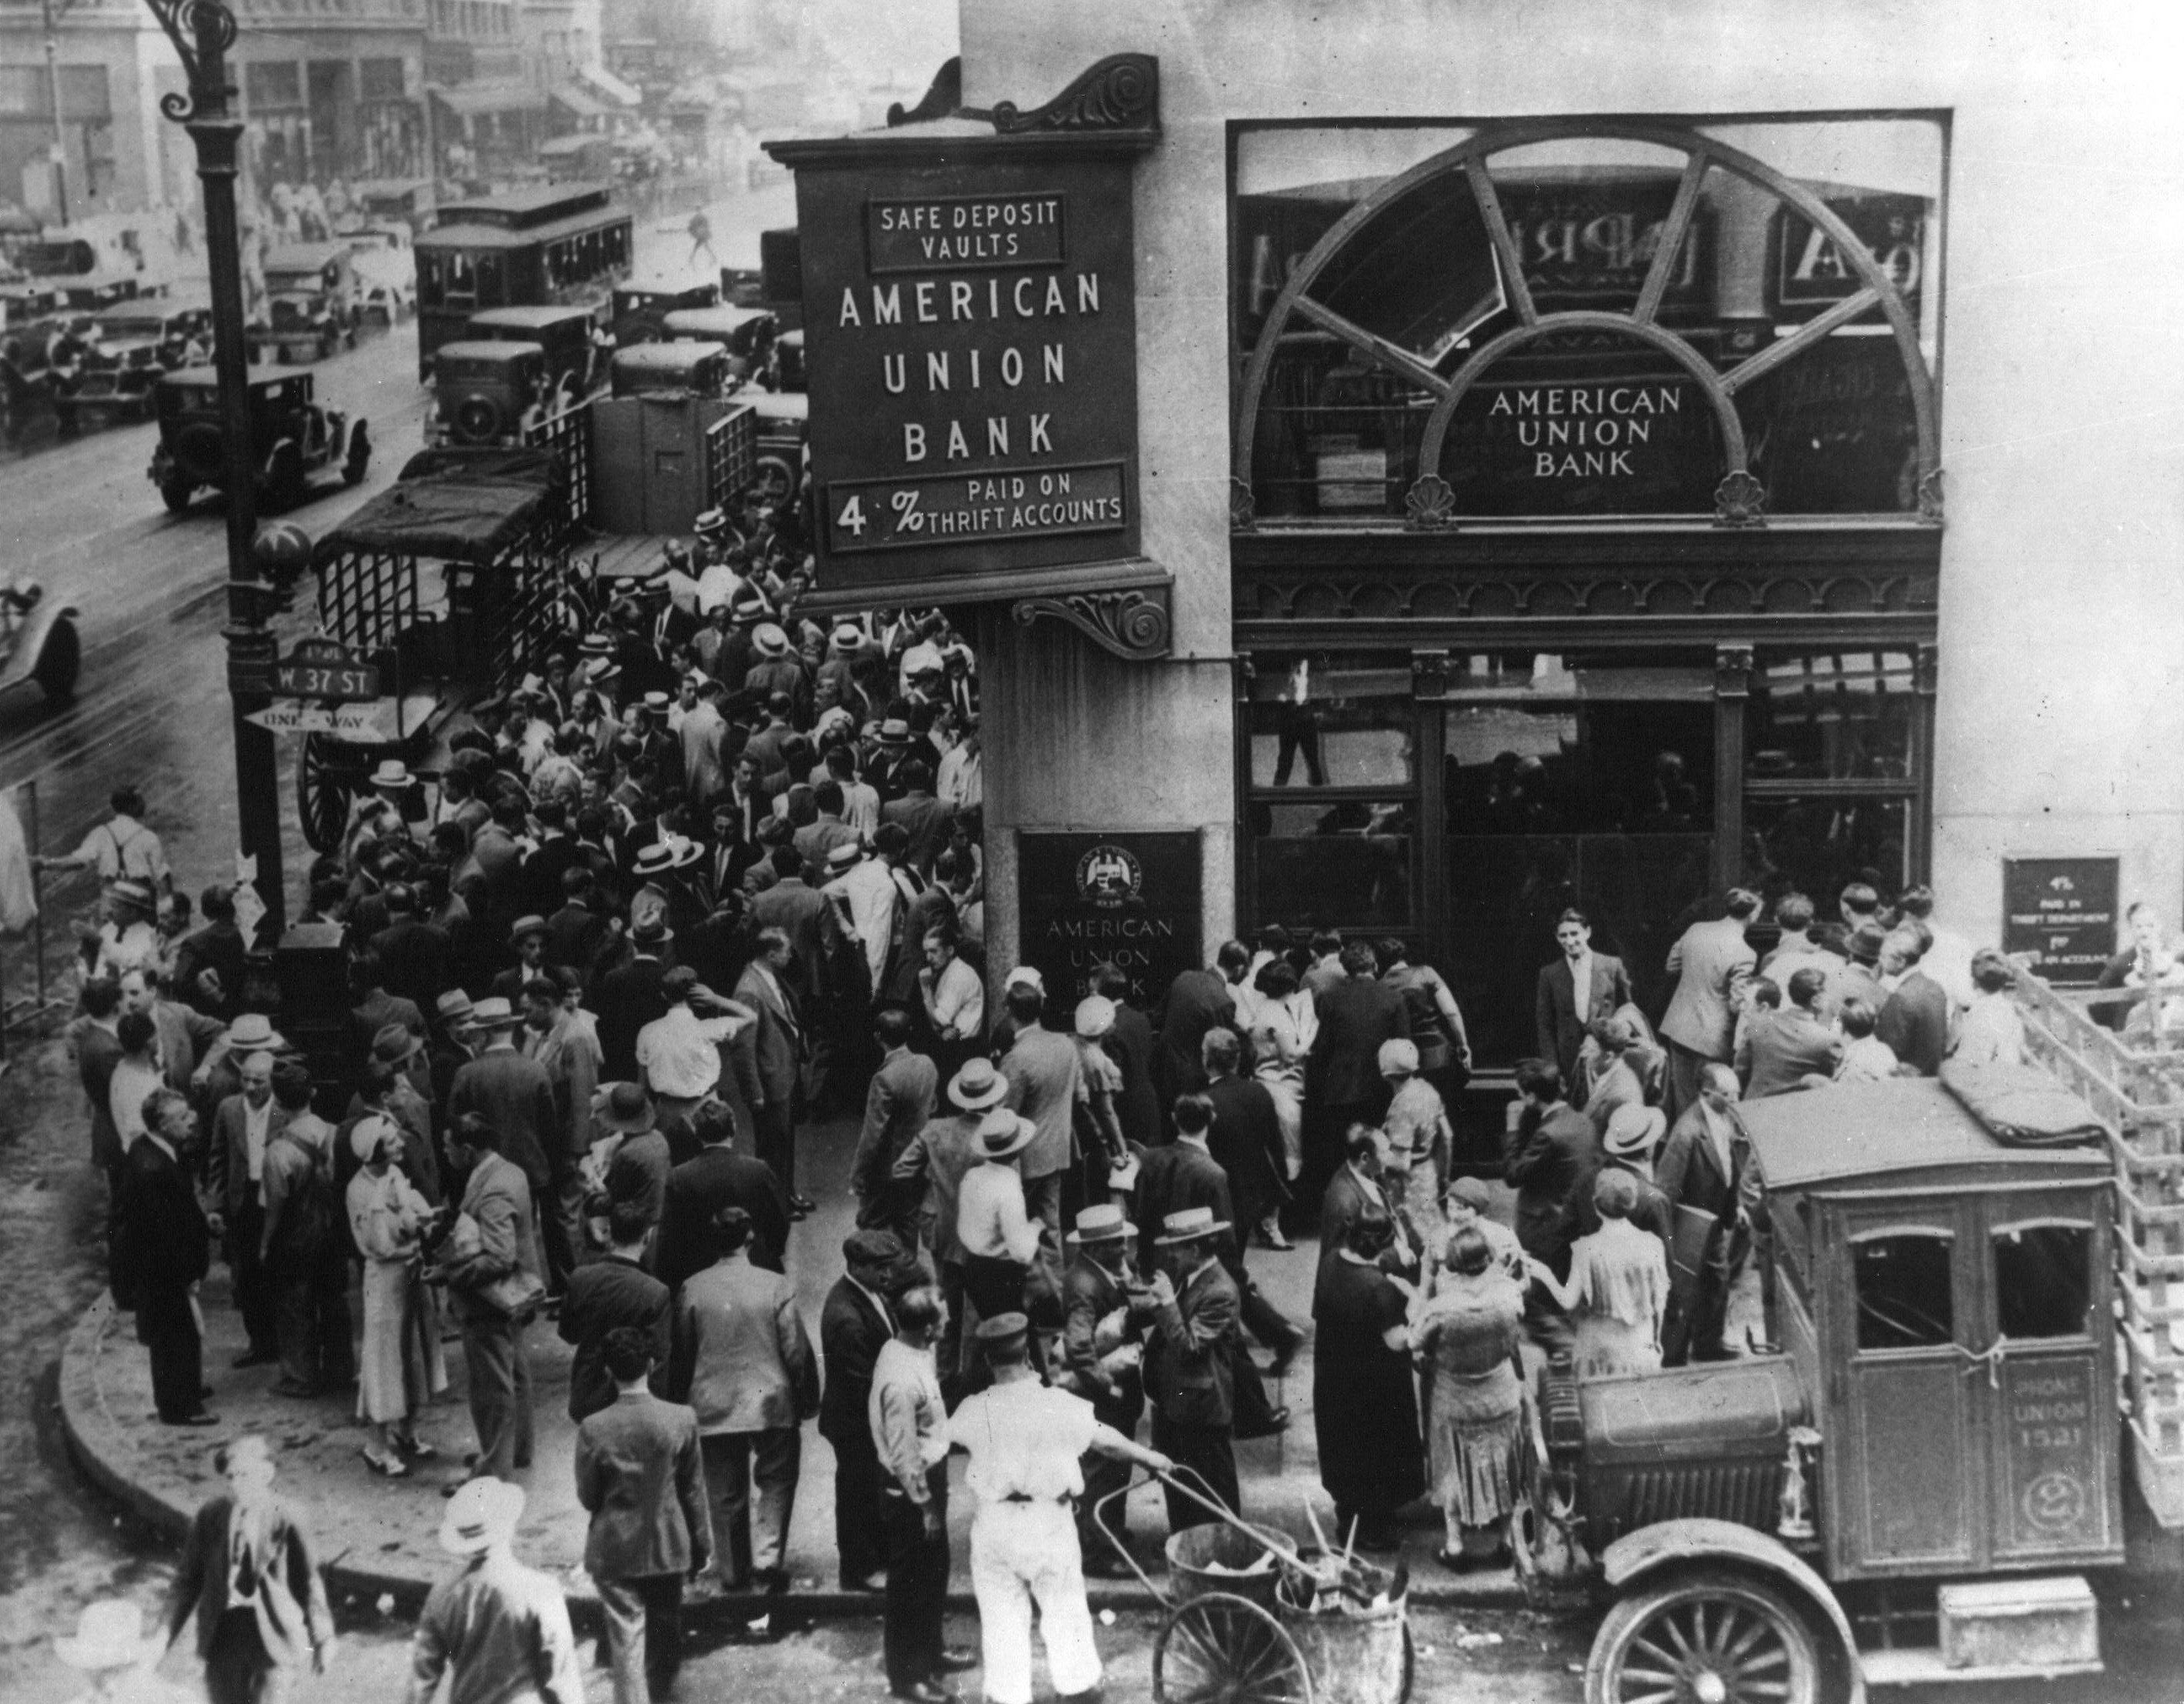 Толпа в американском банке в Нью-Йорке во время банковской паники в начале Великой депрессии